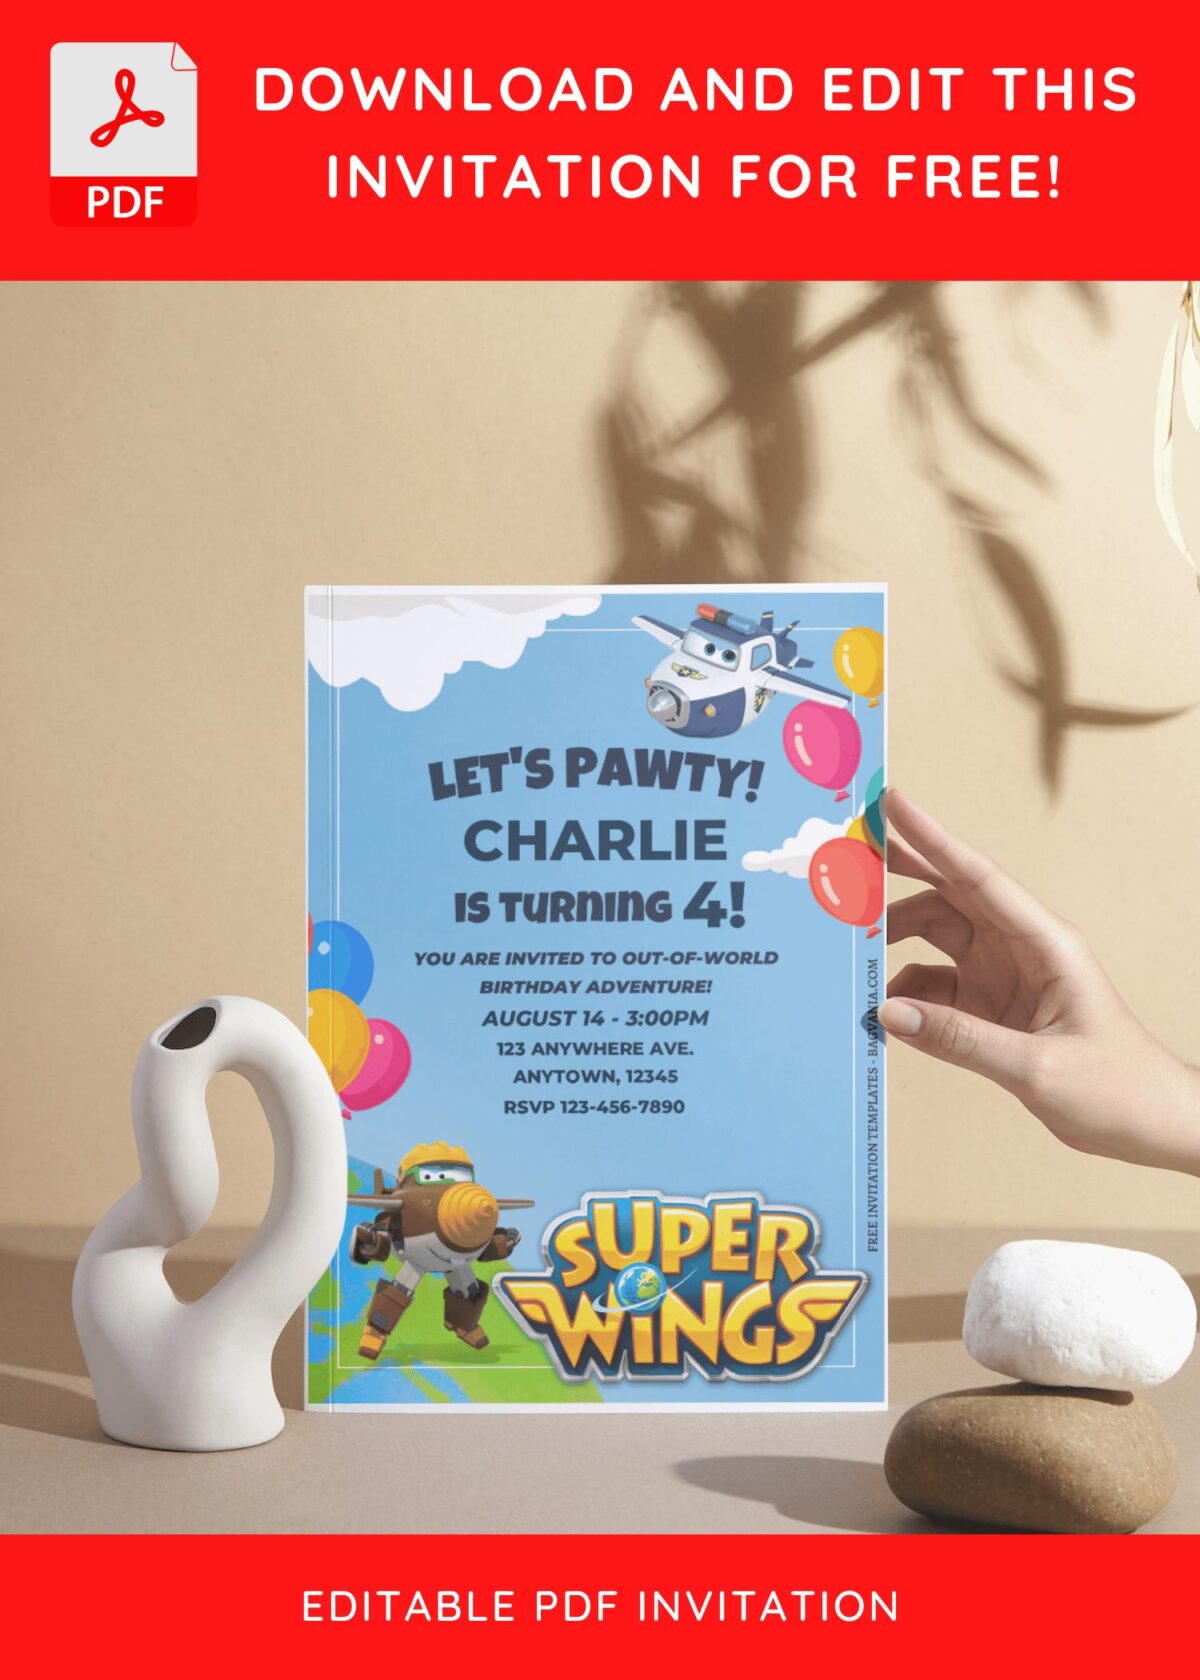 (Free Editable PDF) Joyful Super Wings Birthday Invitation Templates I